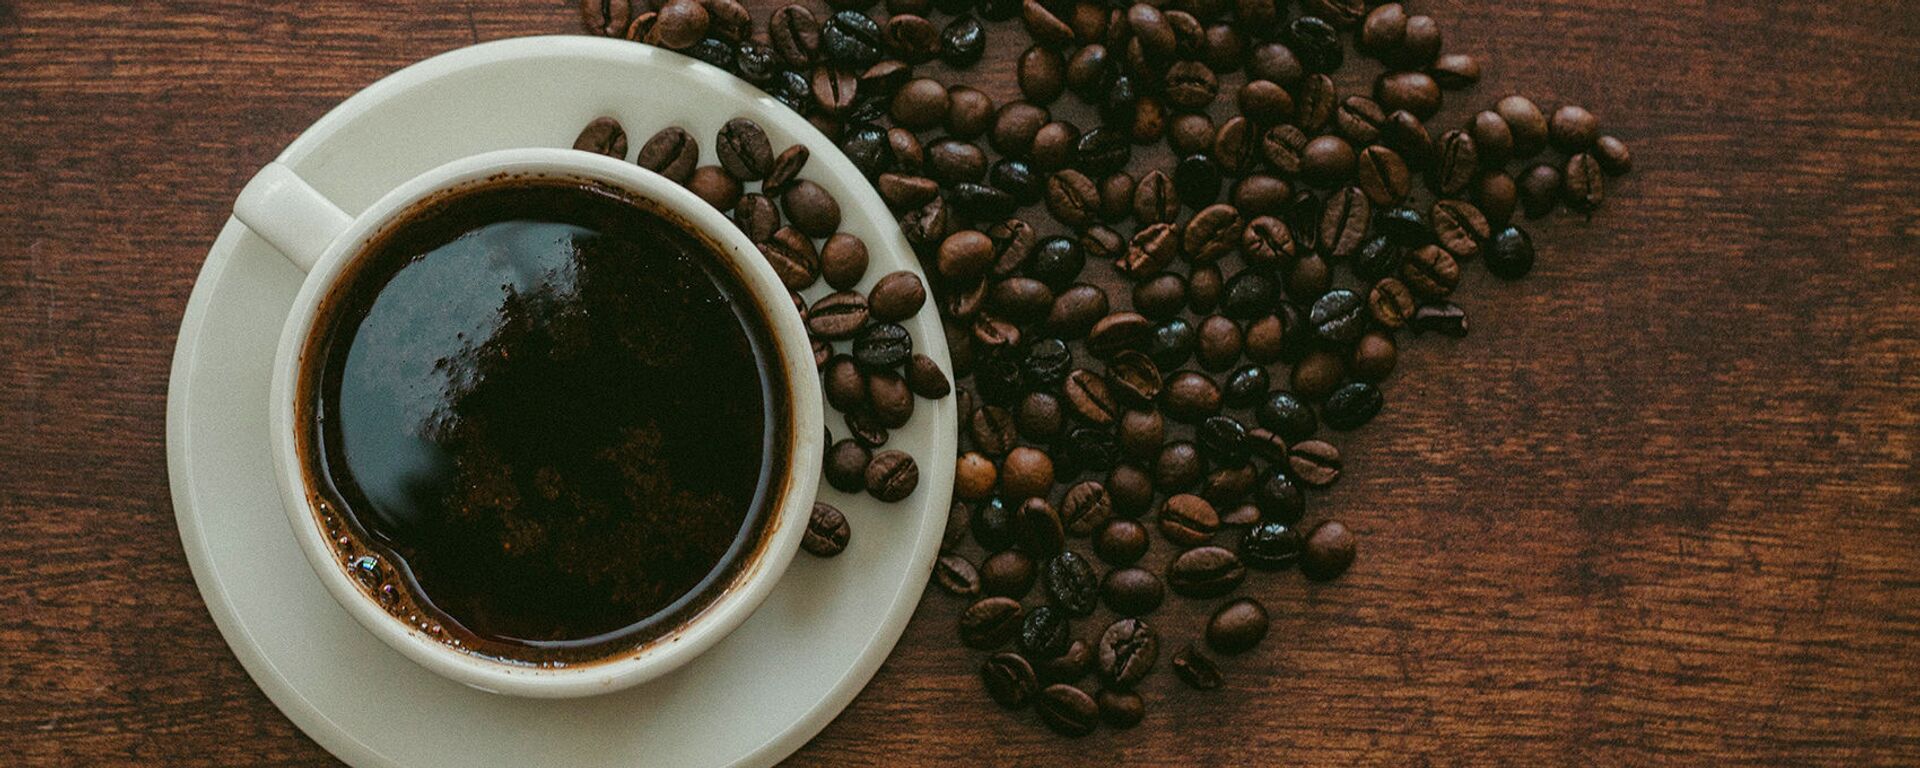 Некоторые исследования показывают, что потребление кофе укрепляет психическое здоровье и снижает риск инсульта - Sputnik Արմենիա, 1920, 30.04.2021